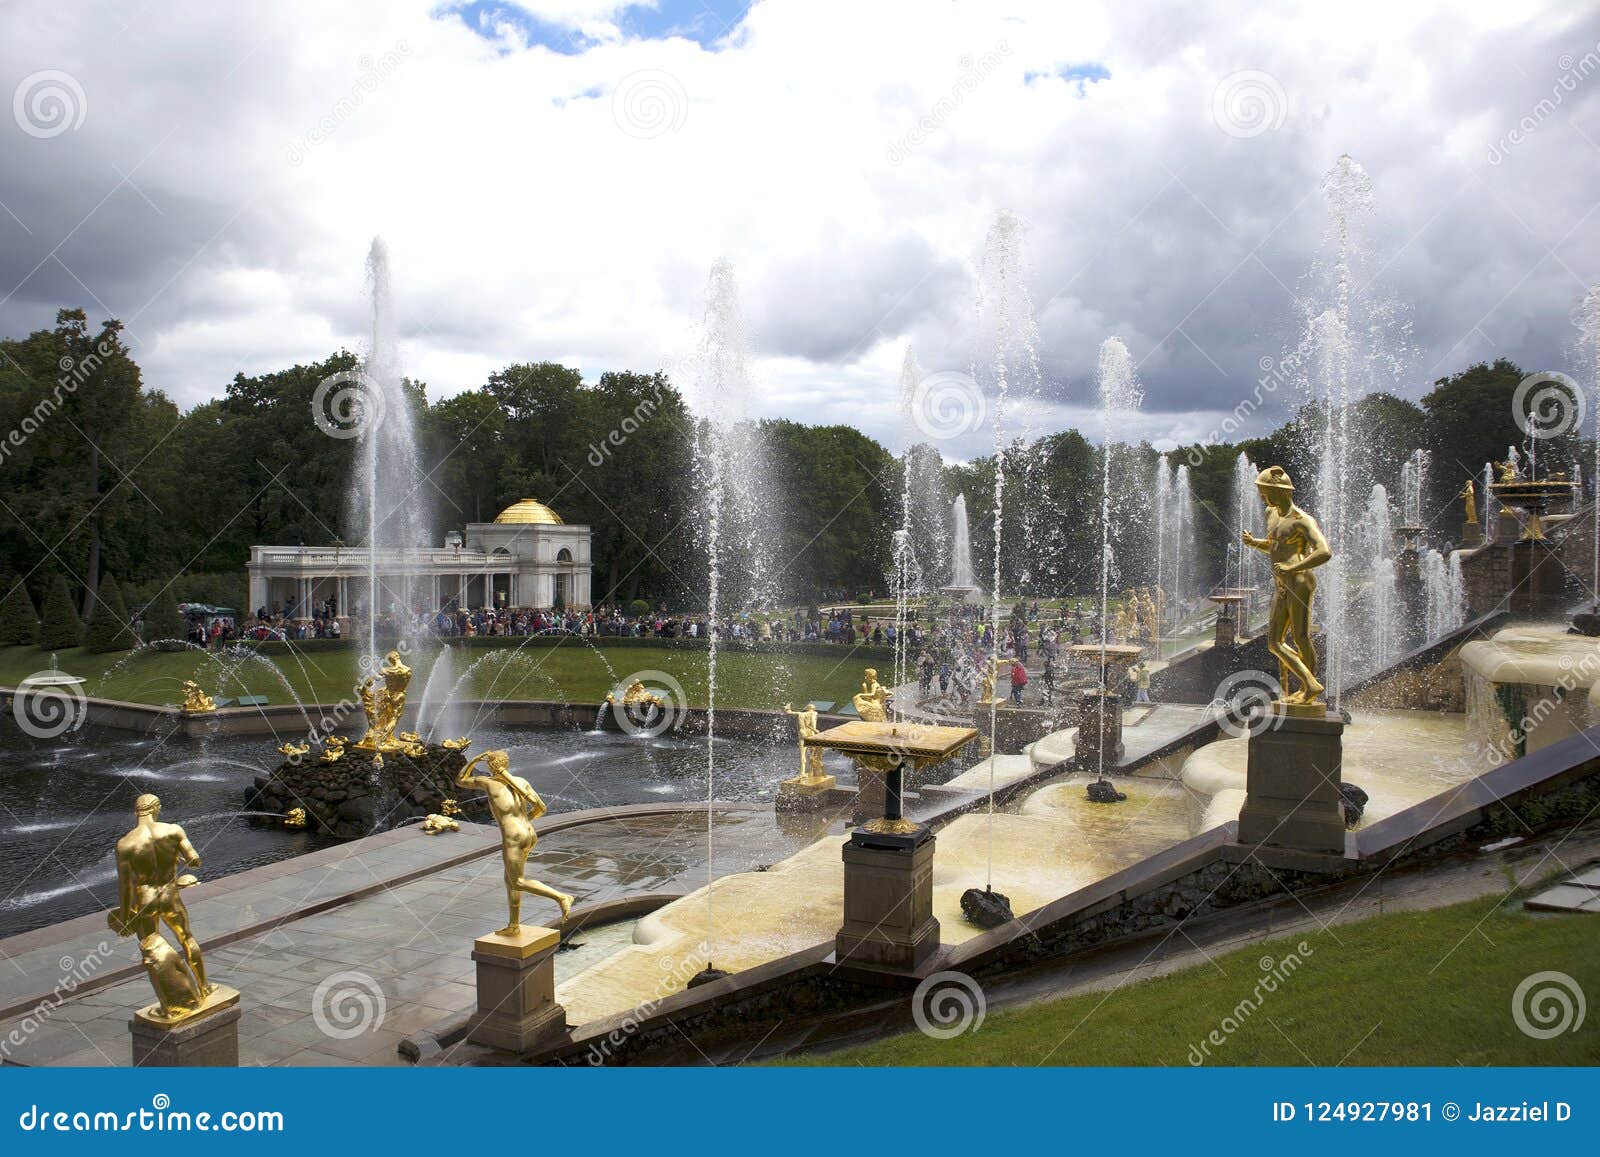 Le mur de l'eau de la fontaine voyage en jet, ensemble baroque de cascade grande dans Peterhof, Russie, points de repère du 18ème siècle